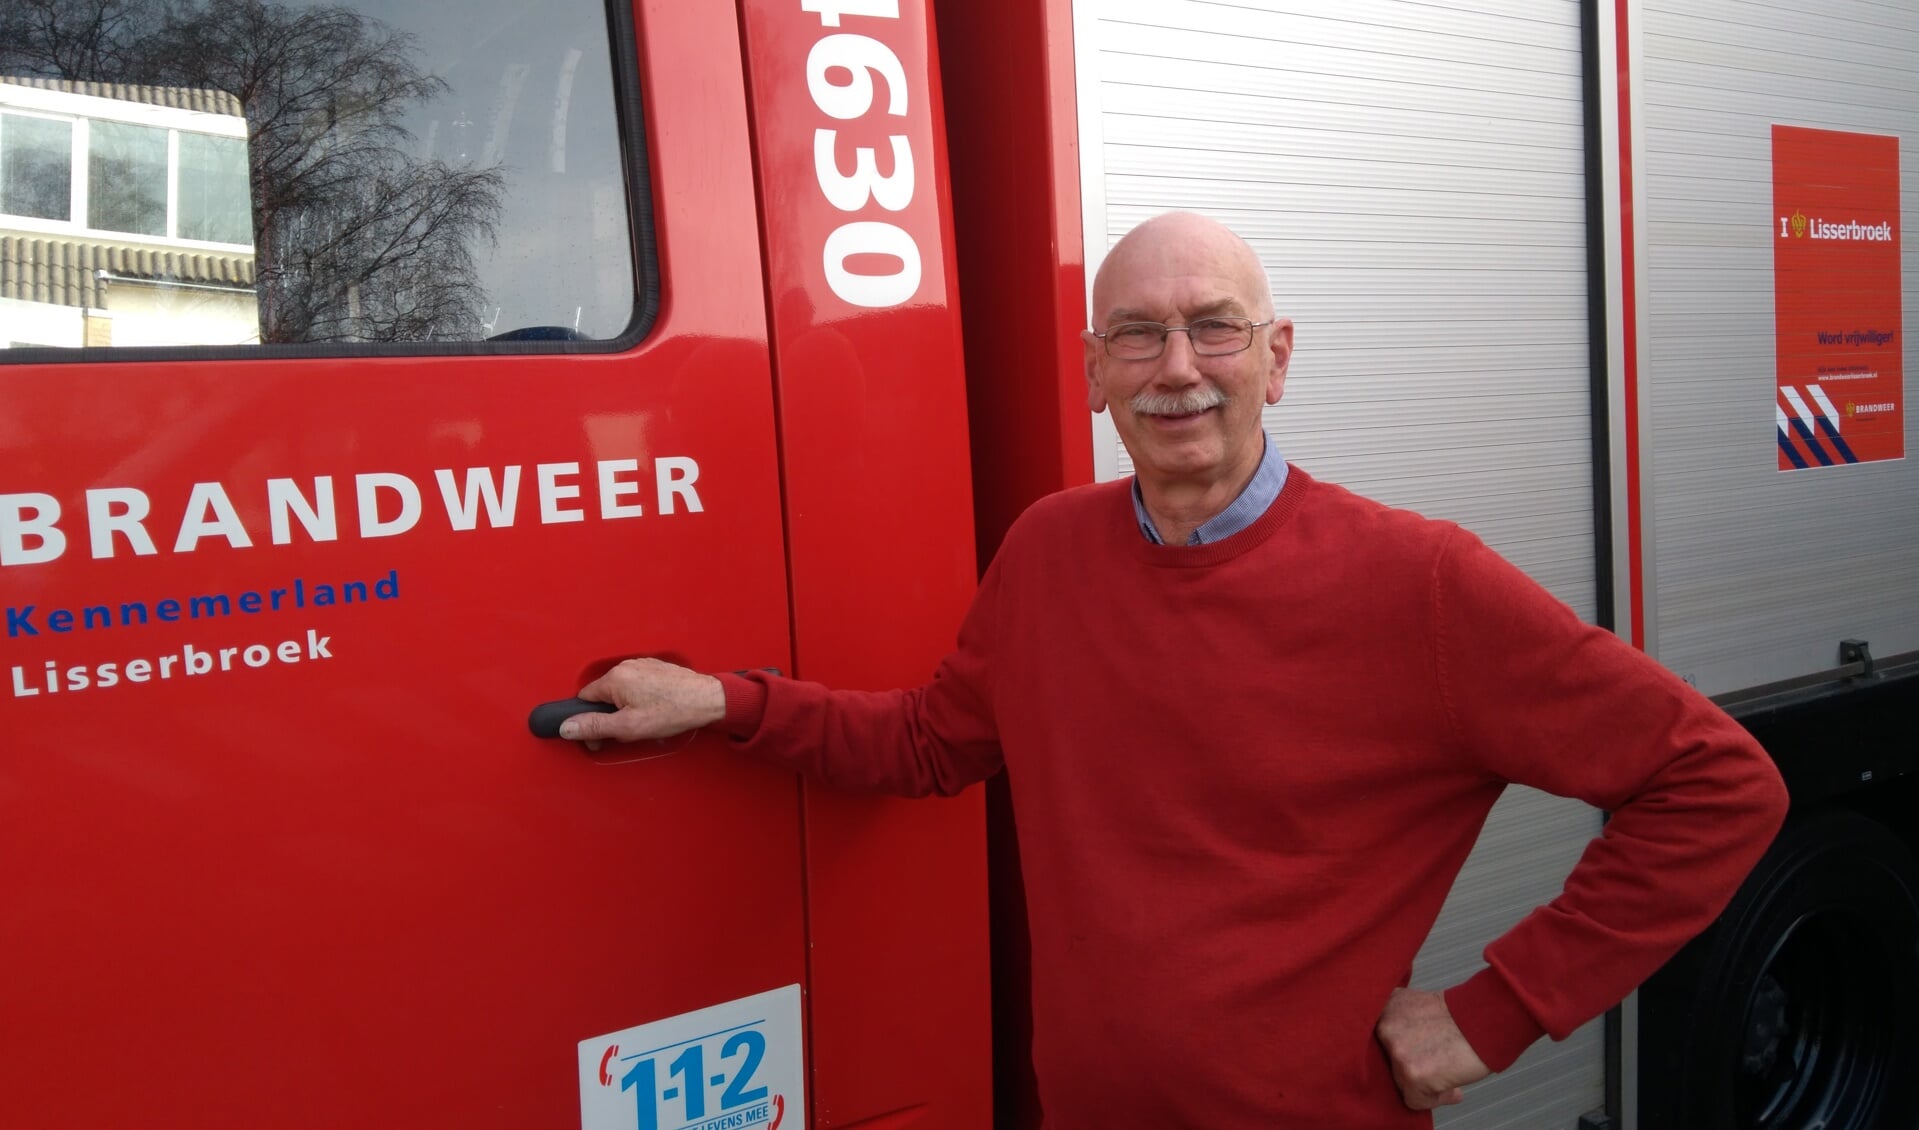 Henk van Voorst heeft afscheid genomen van zijn geliefde brandweer. Met 66 jaar is het welletjes, vindt hij.